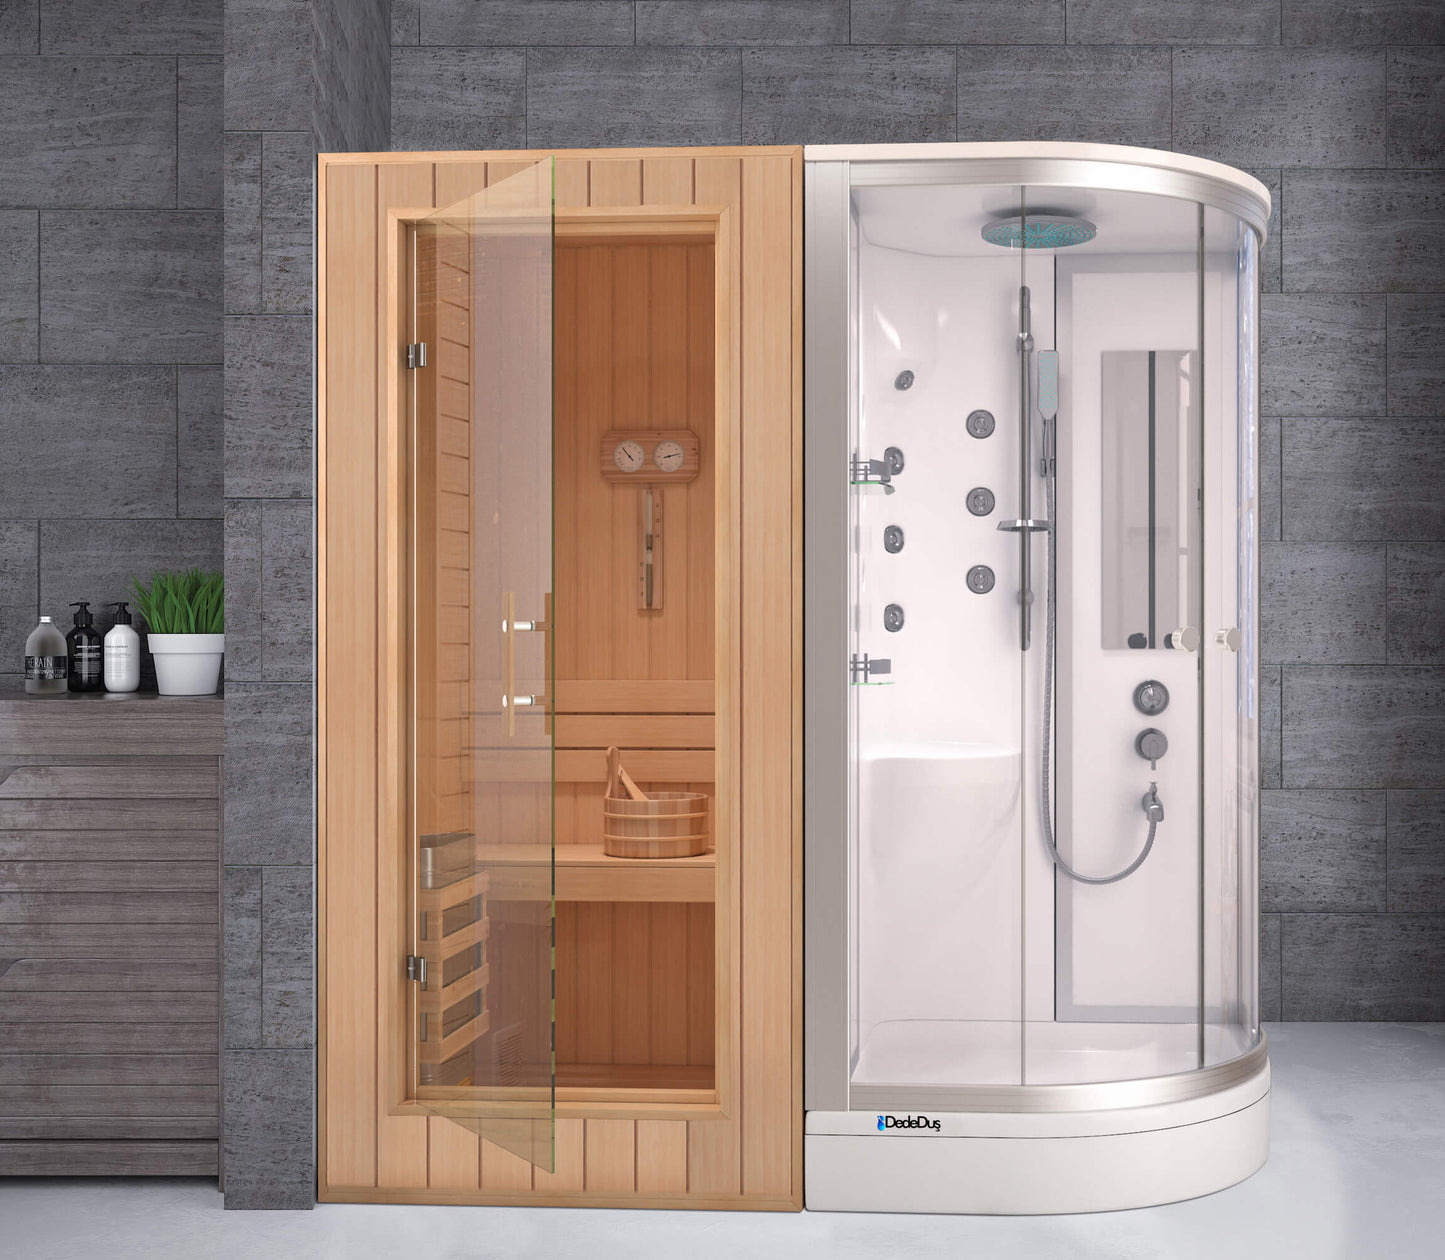 Beyaz oval duş teknesi üzeri masajlı kompakt duşakabinli sauna odası, Dede Duş, Çengelköy, Göztepe, Kadıköy